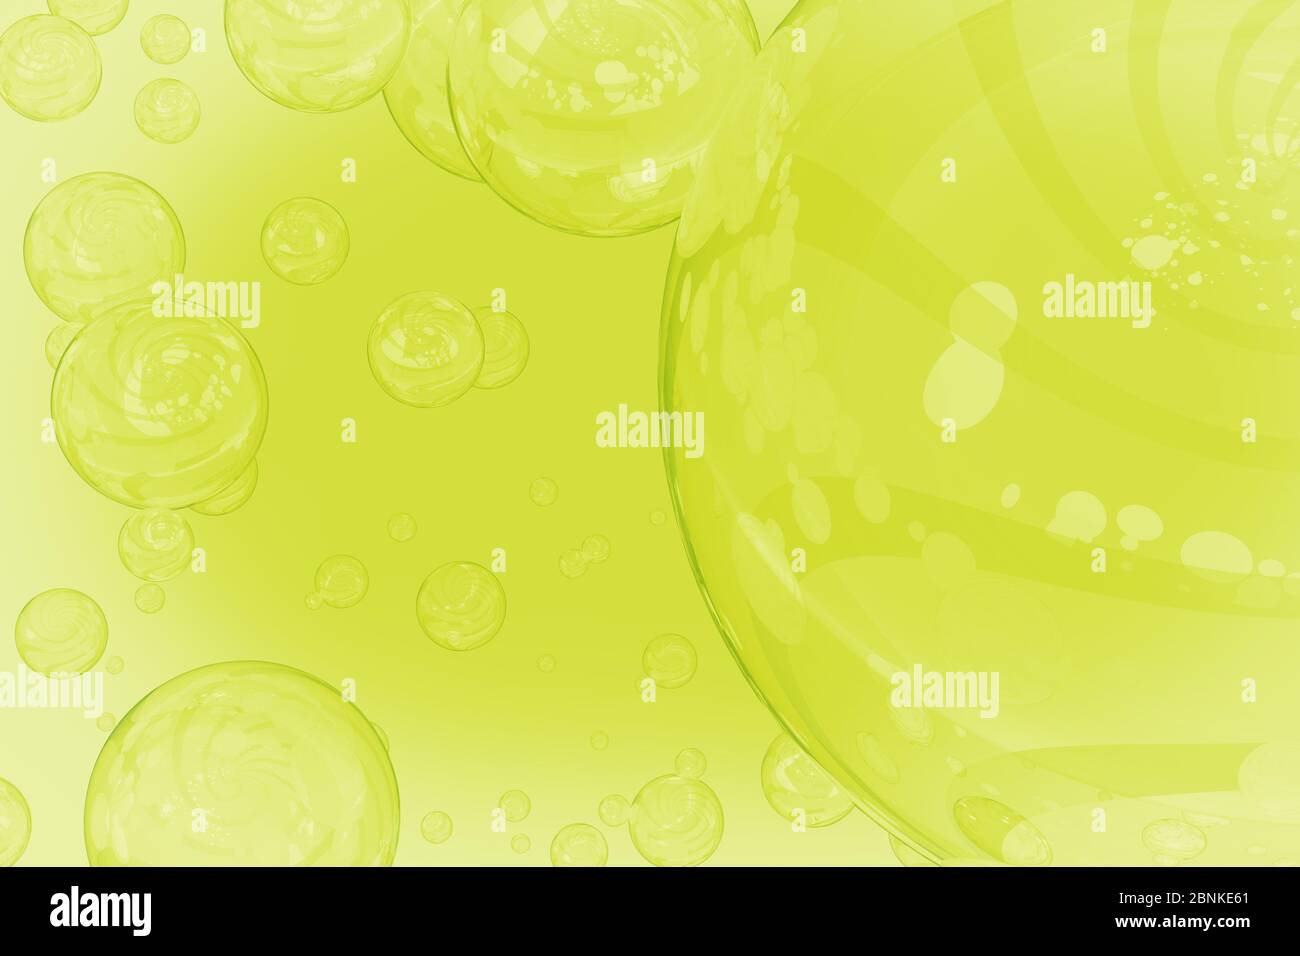 Carta da parati verde chiaro di diverse dimensioni di bolle circolari riflettenti luce solare. Foto Stock